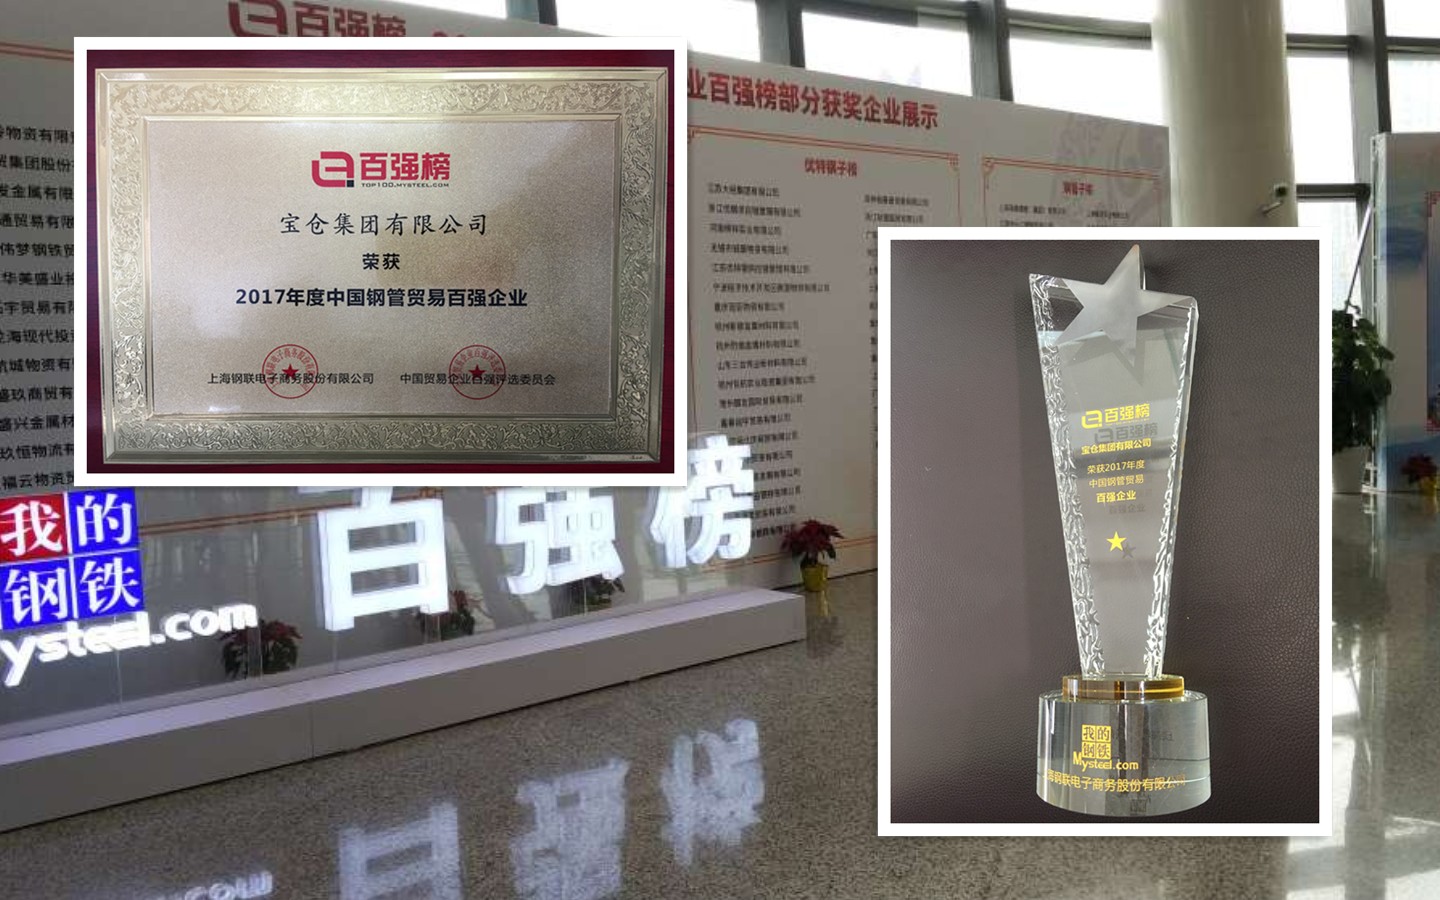 宝仓集团有限公司荣获2017年中国钢管贸易百强企业